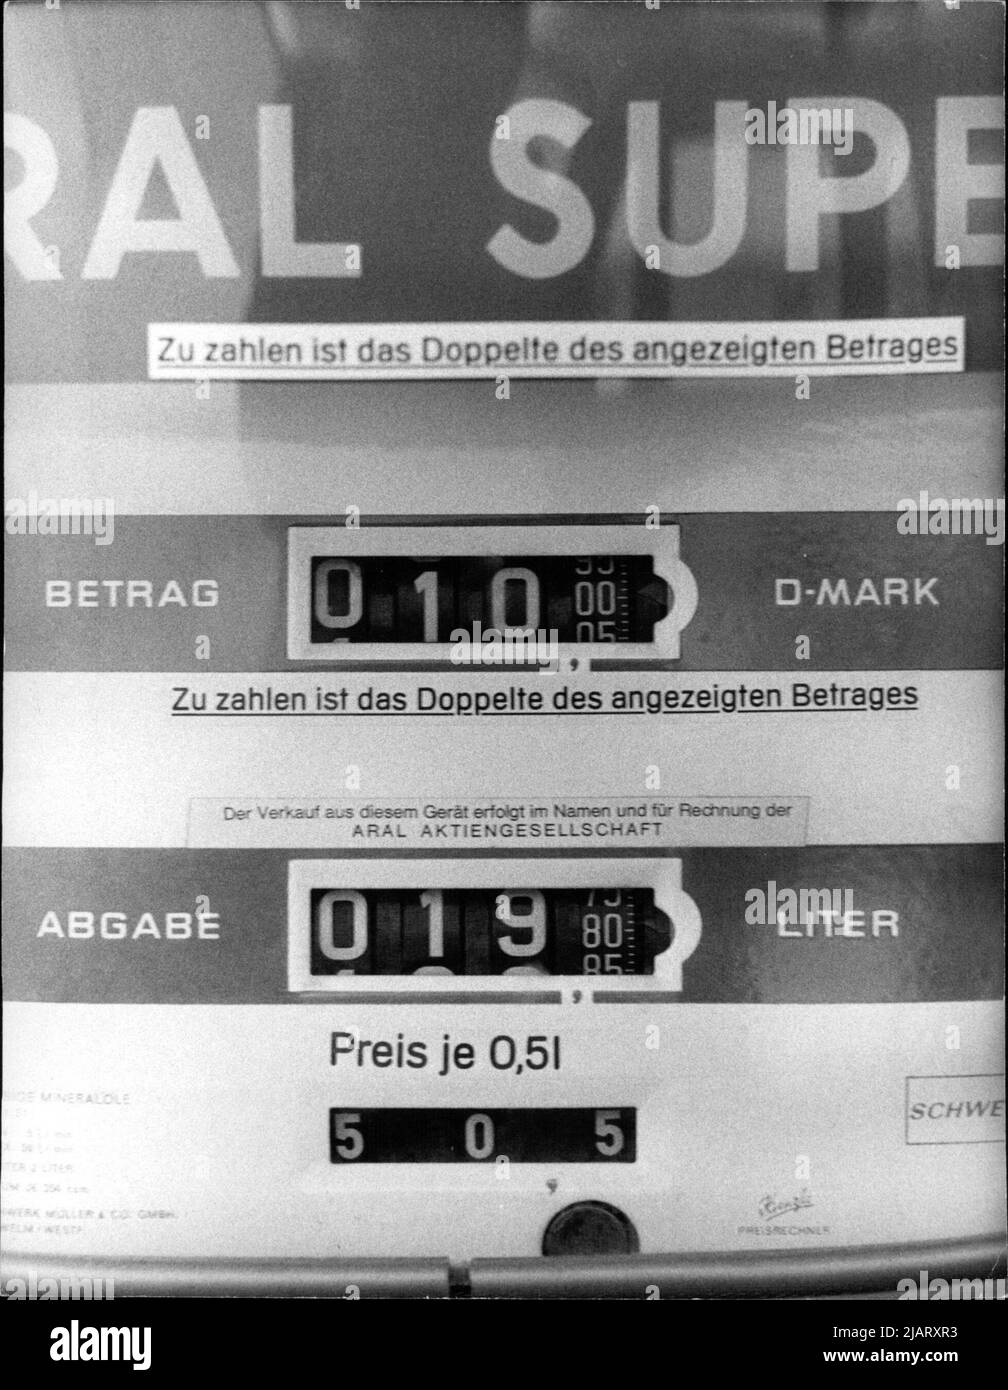 Das Foto zeigt die Anzeige an einer Tanksäule für Abgabe in Liter und Preis in D-Mark bei einer Aral Autobahn-Tankstelle. Stock Photo